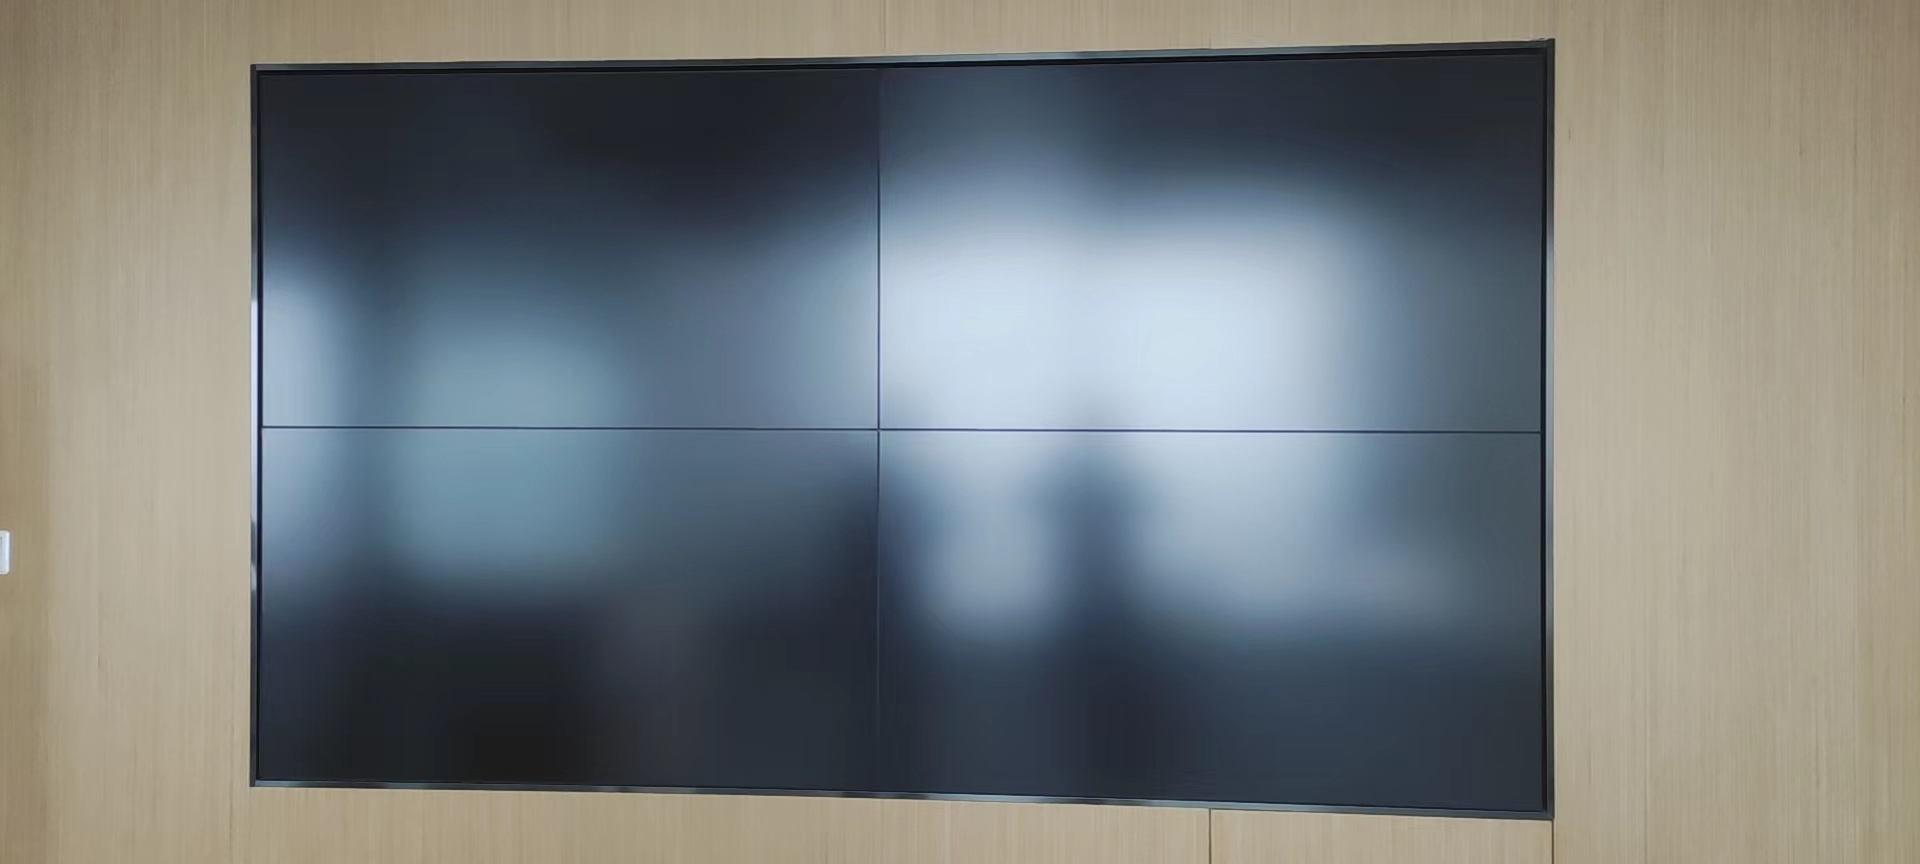 南京多媒体液晶拼接屏大屏幕电视墙显示器 小间距LCD液晶屏厂家